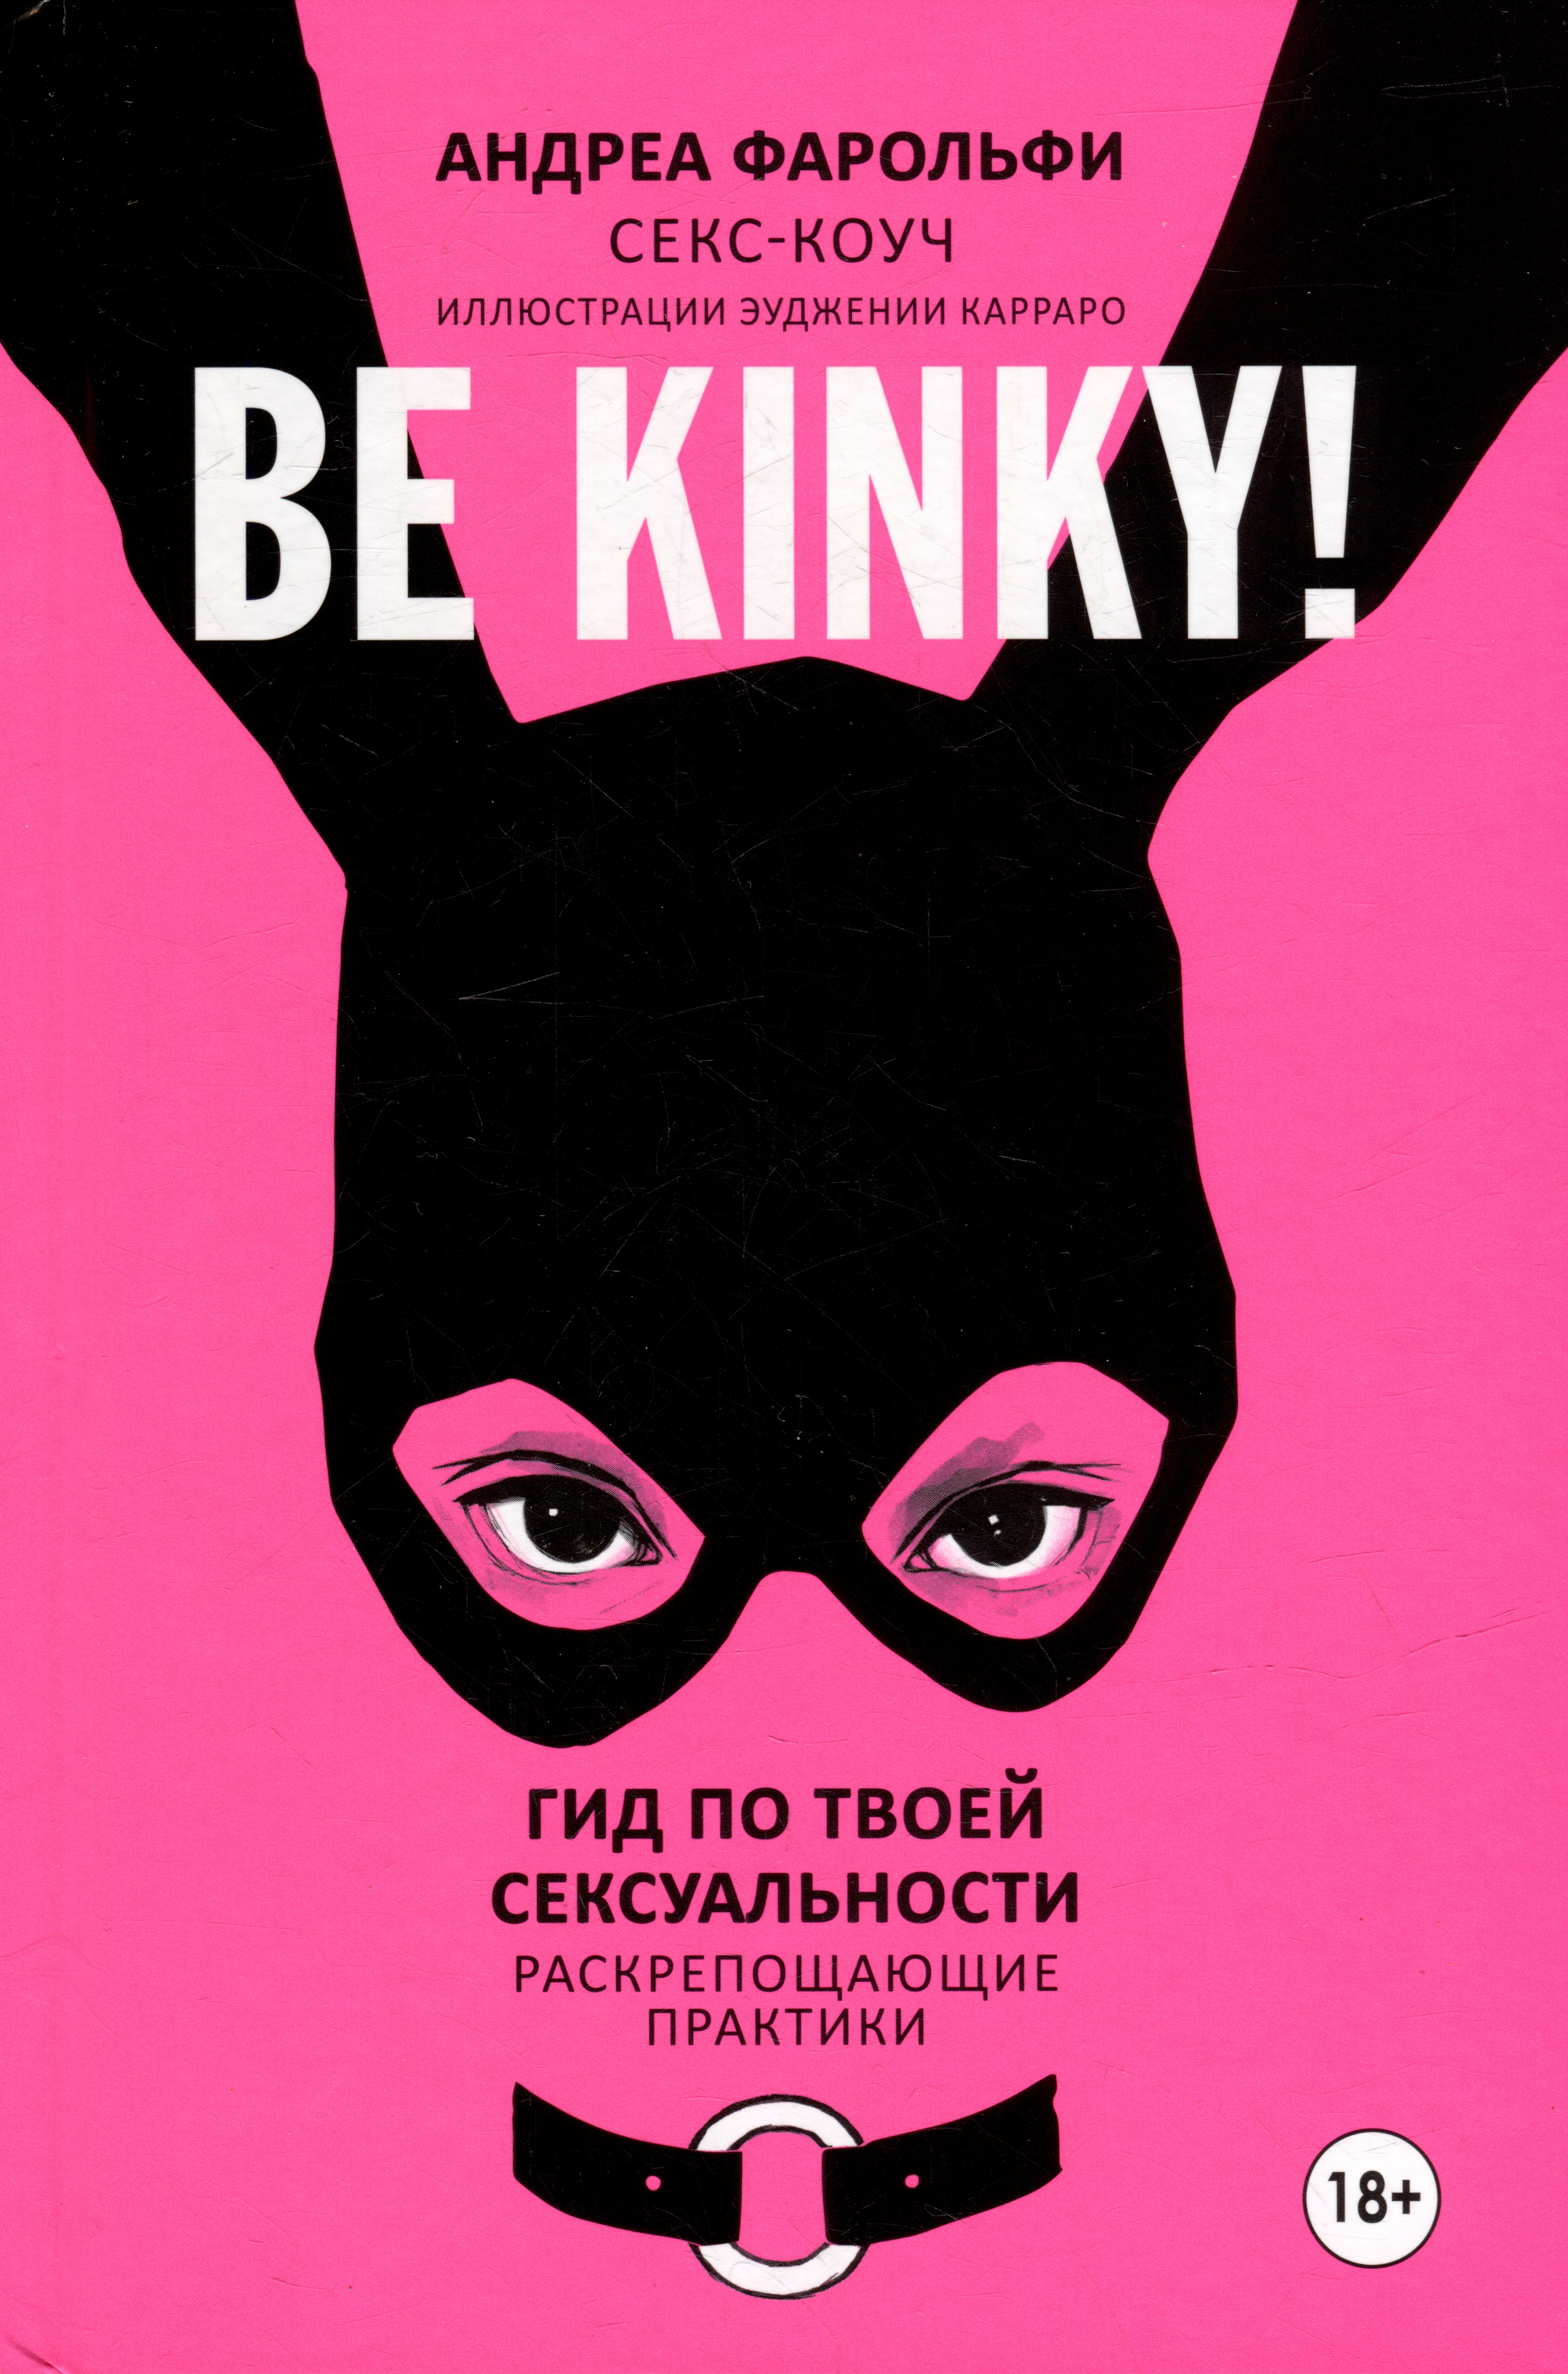 Be kinky!    